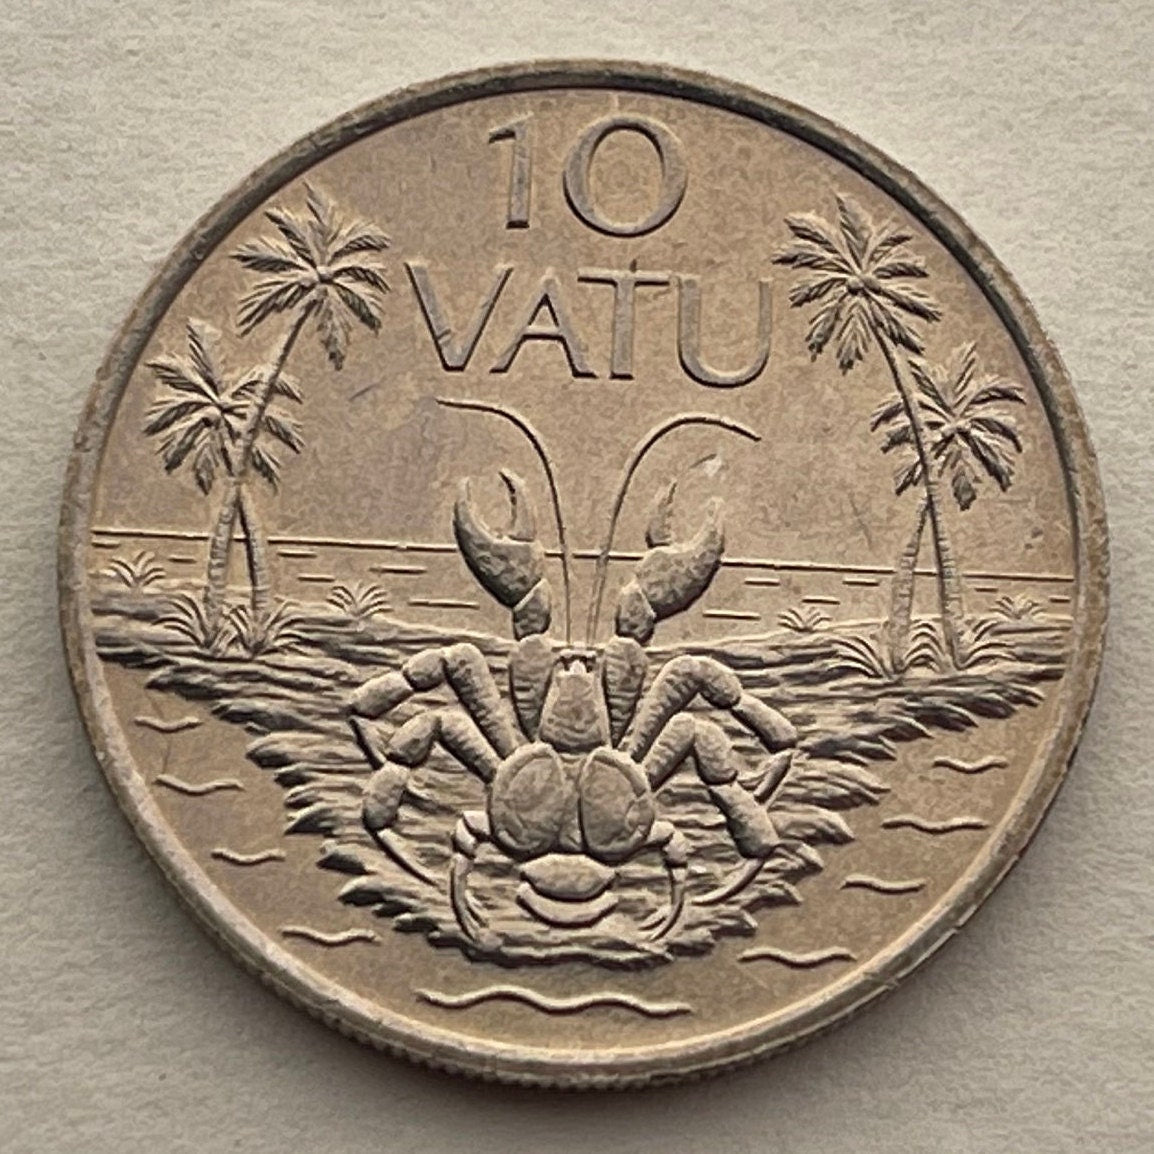 Coconut Crab 10 Vatu Vanuatu Authentic Coin Money for Jewelry and Craft Making (Robber Crab) (Palm Thief) (Hermit Crab) (Melanesia)